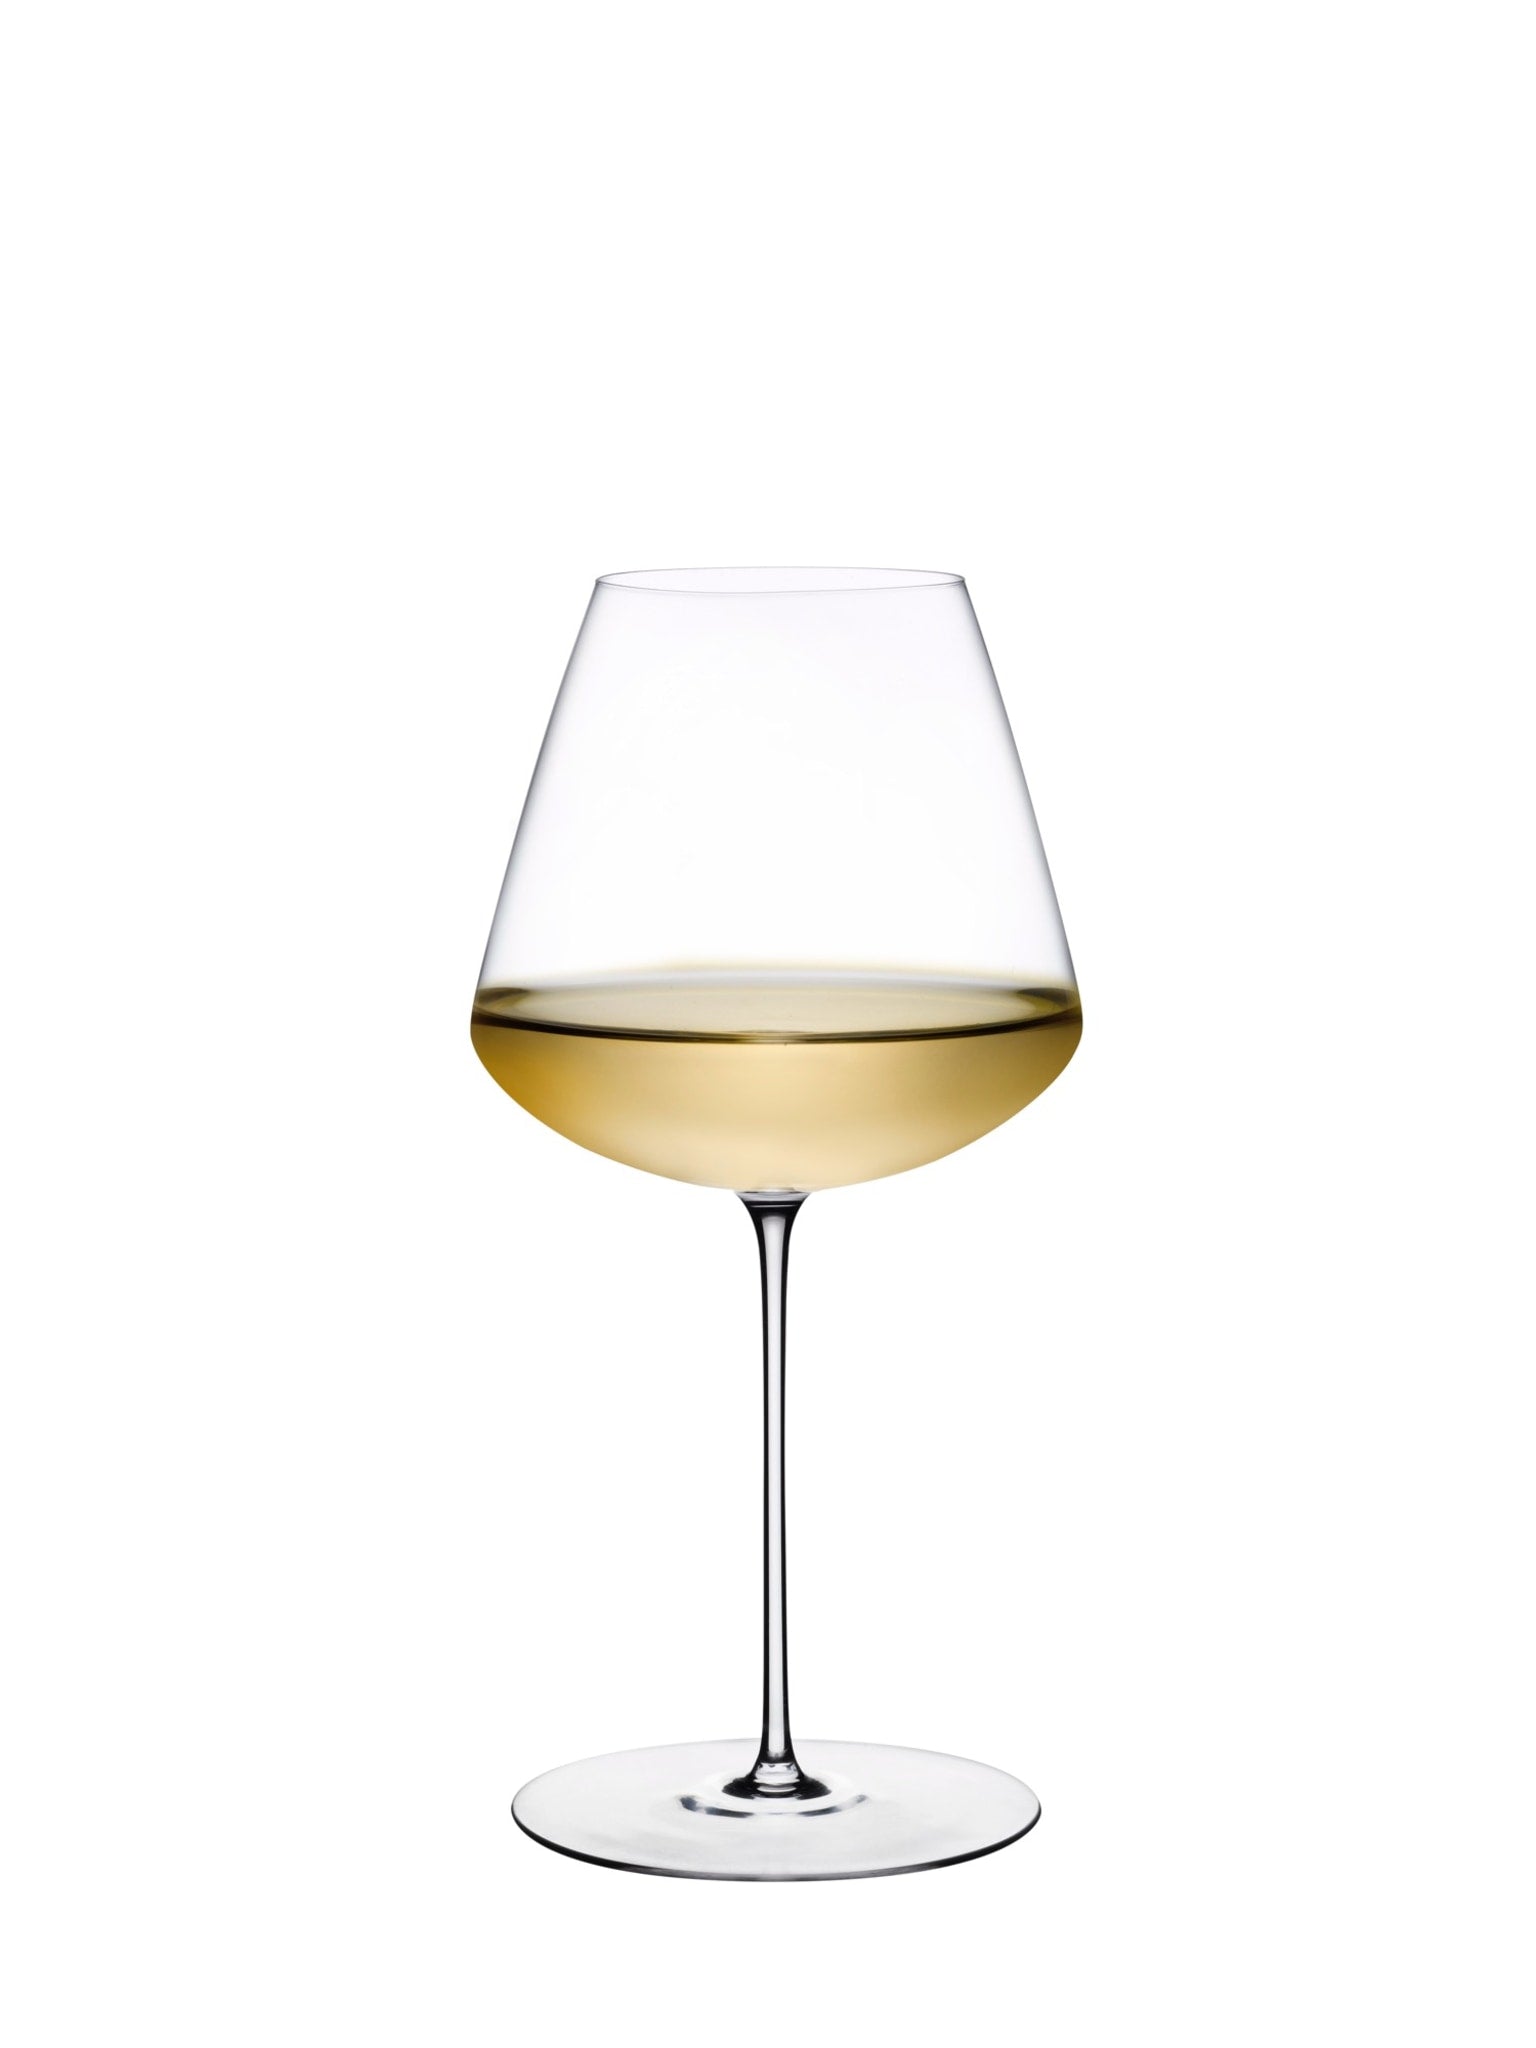 Stem Zero rødvin glas - et raffineret valg til dine vinoplevelser.